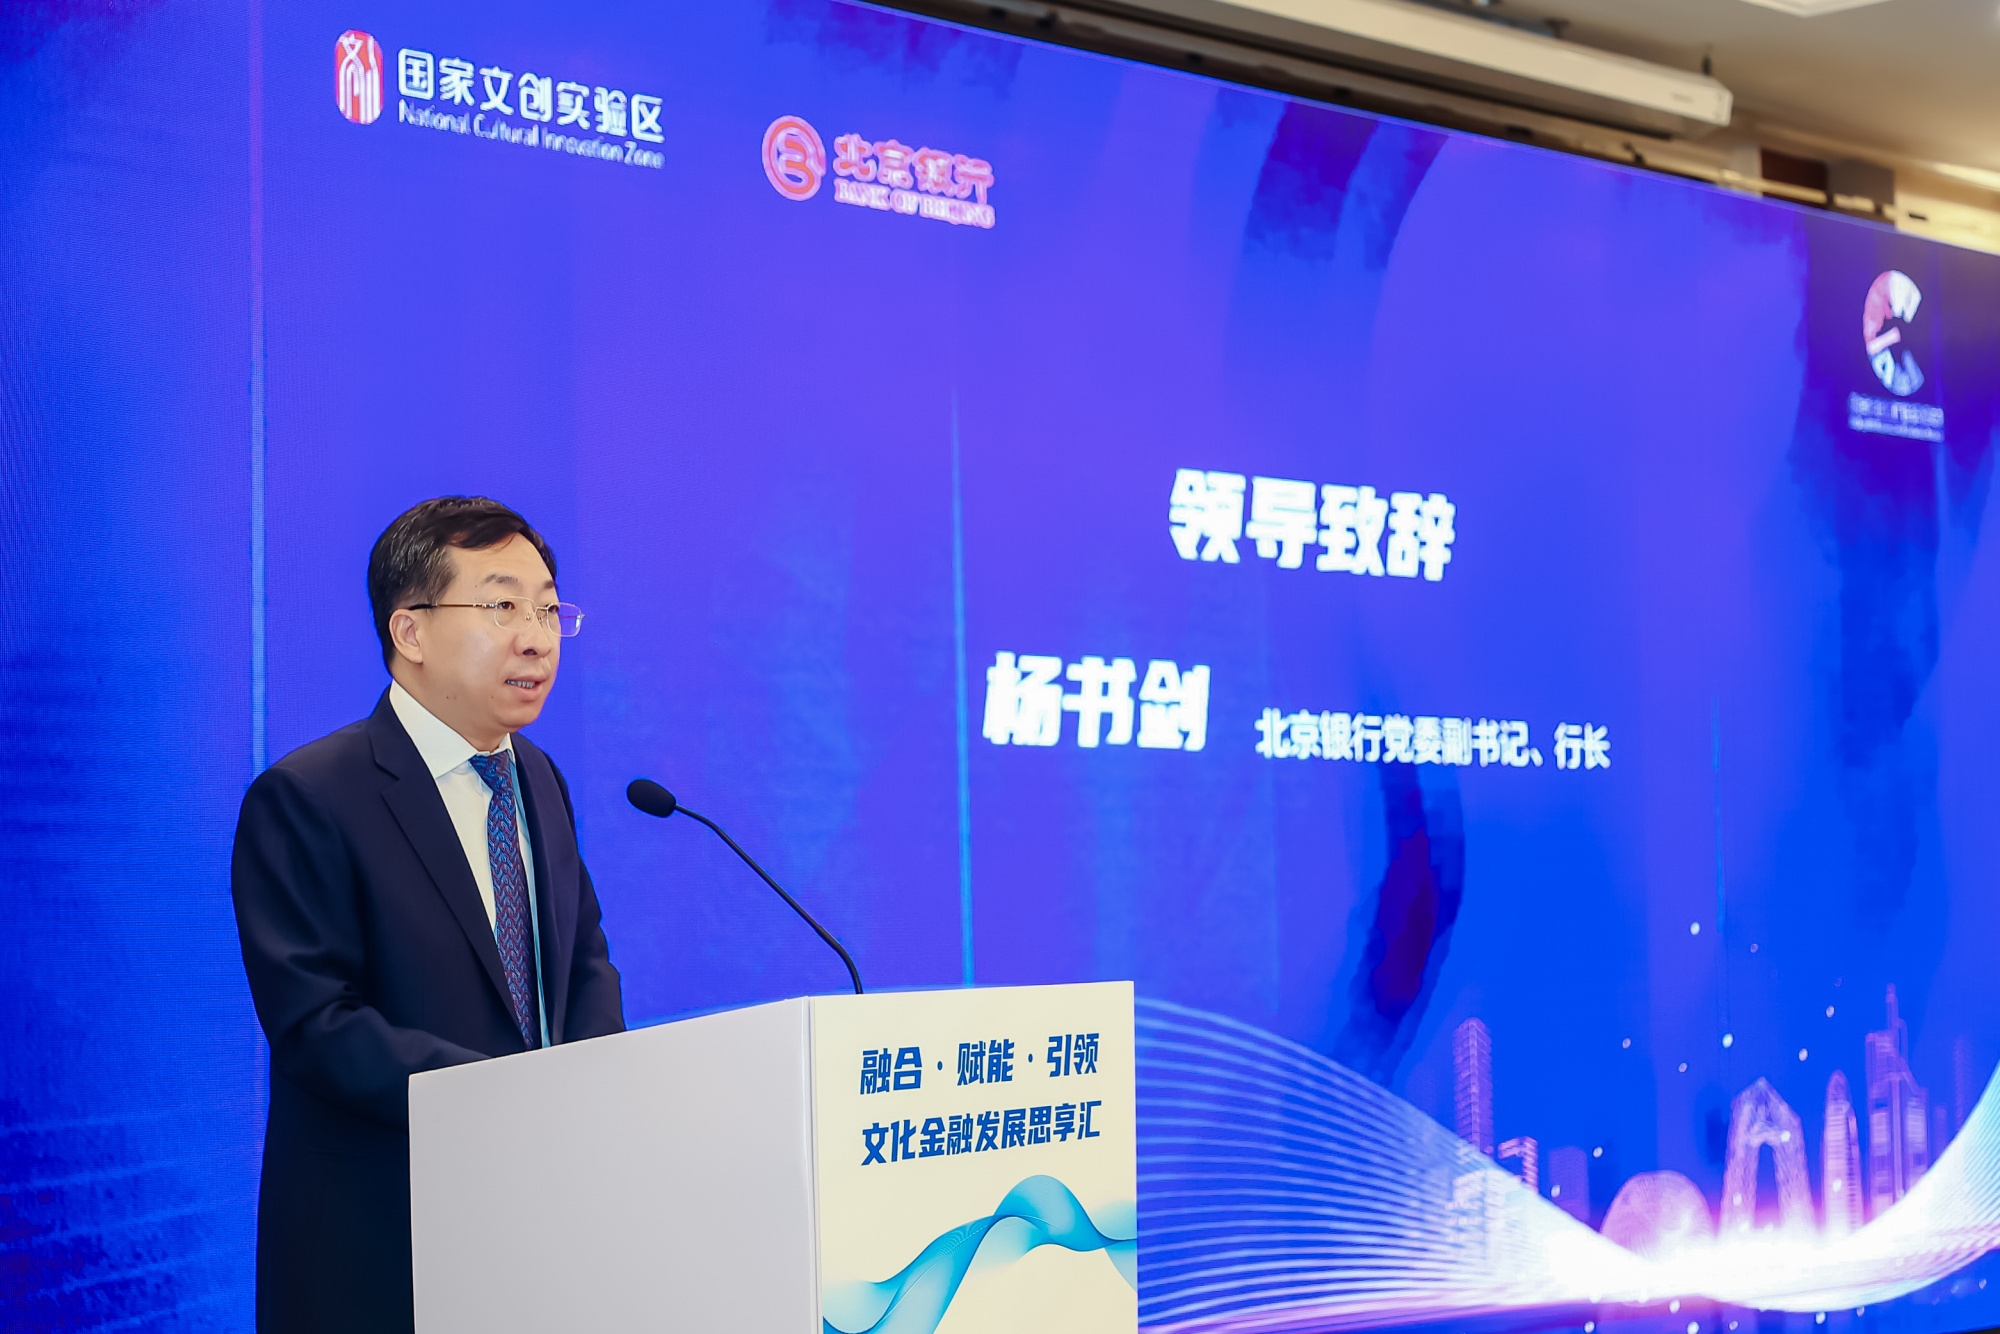 北京银行与国家文化产业创新实验区 签署战略合作协议并发布“京韵文创”品牌